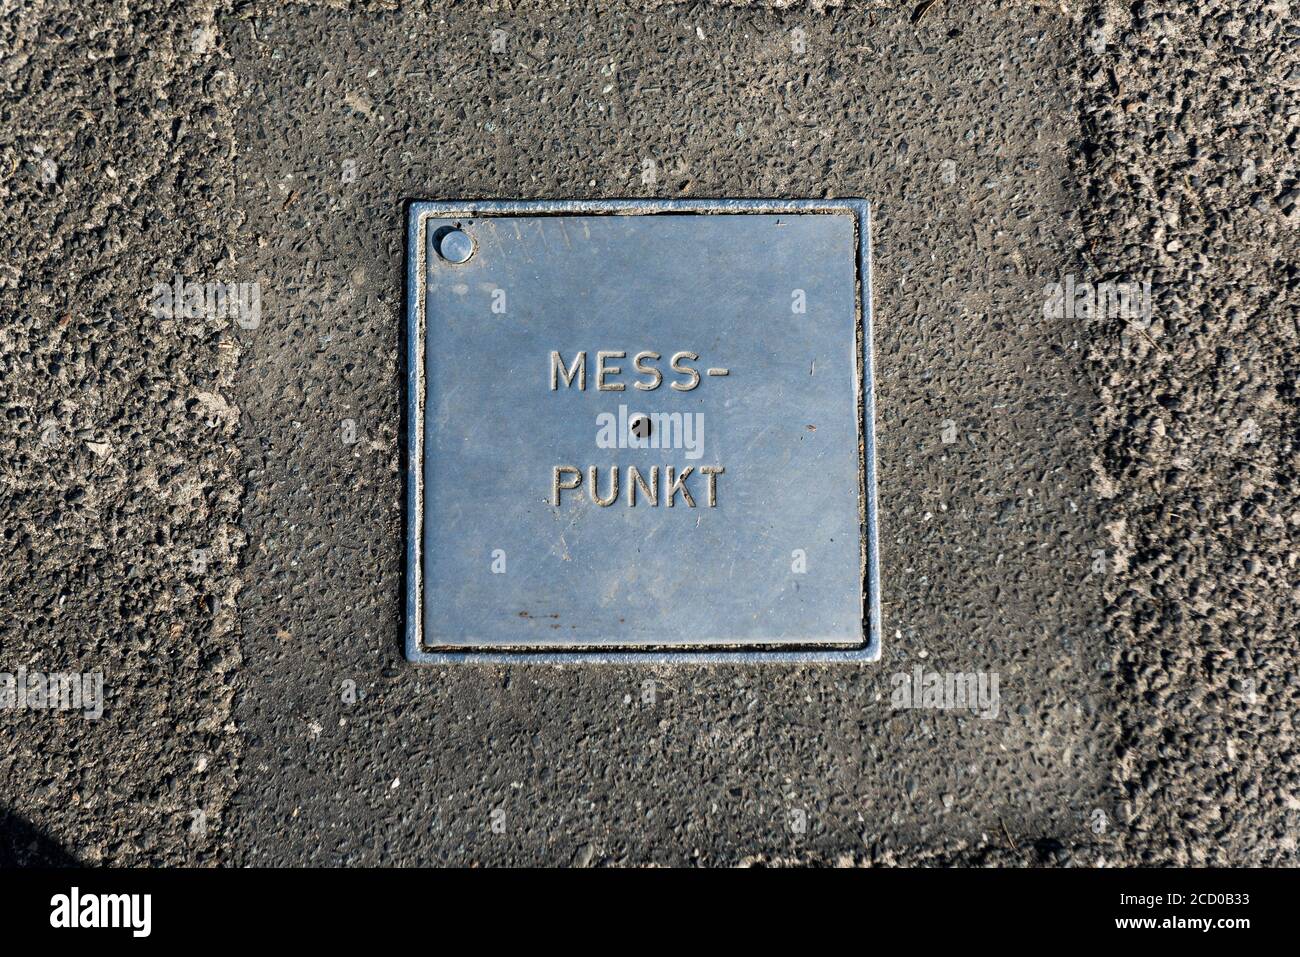 Eine Metallplatte mit der Aufschrift 'Punkt' Messpunkt Ist in den Boden eingebettet Stockfoto